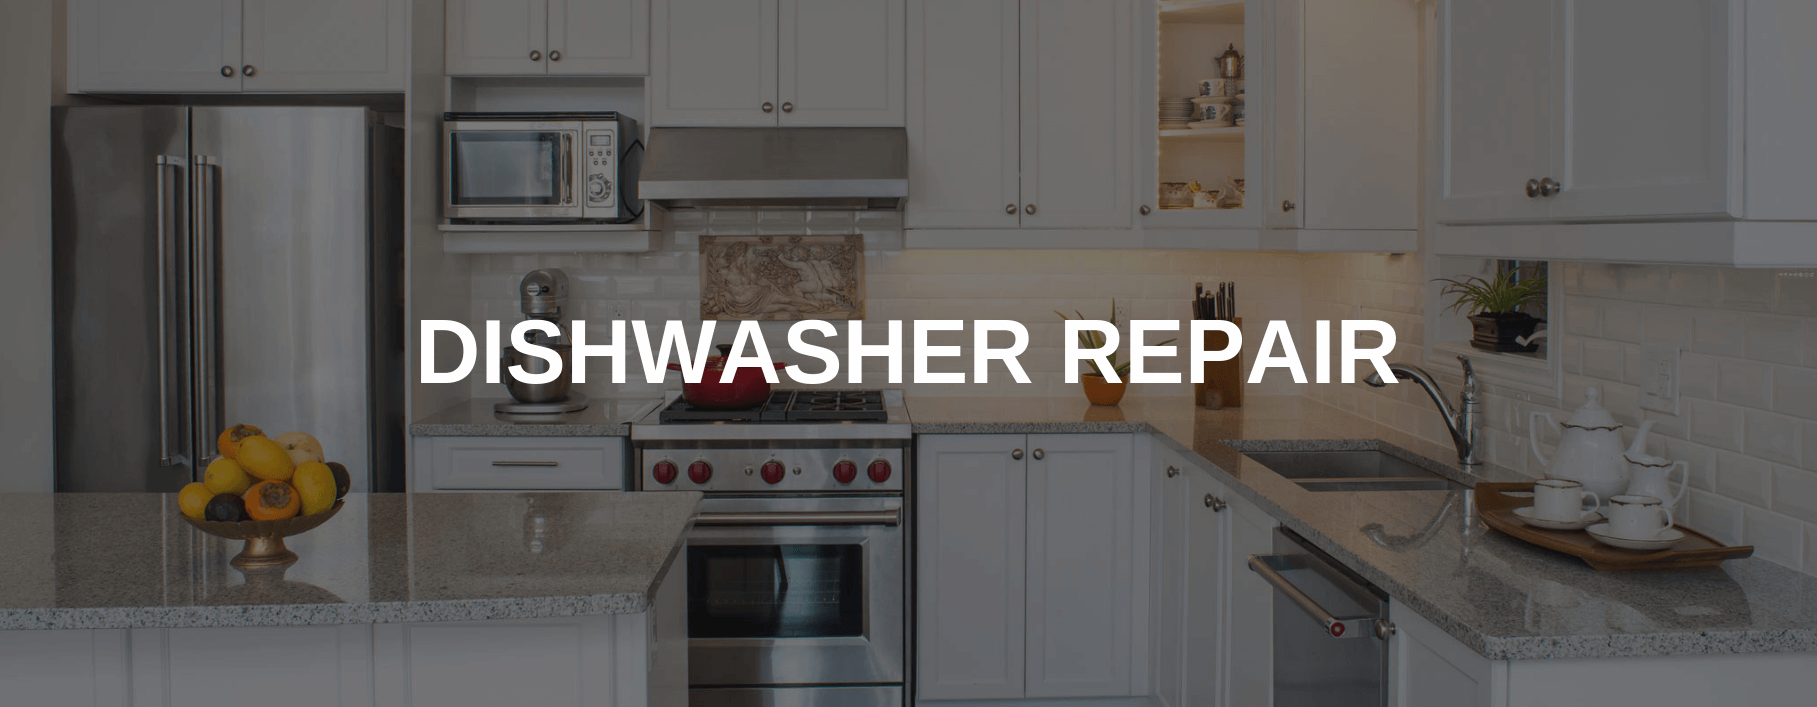 dishwasher repair tempe